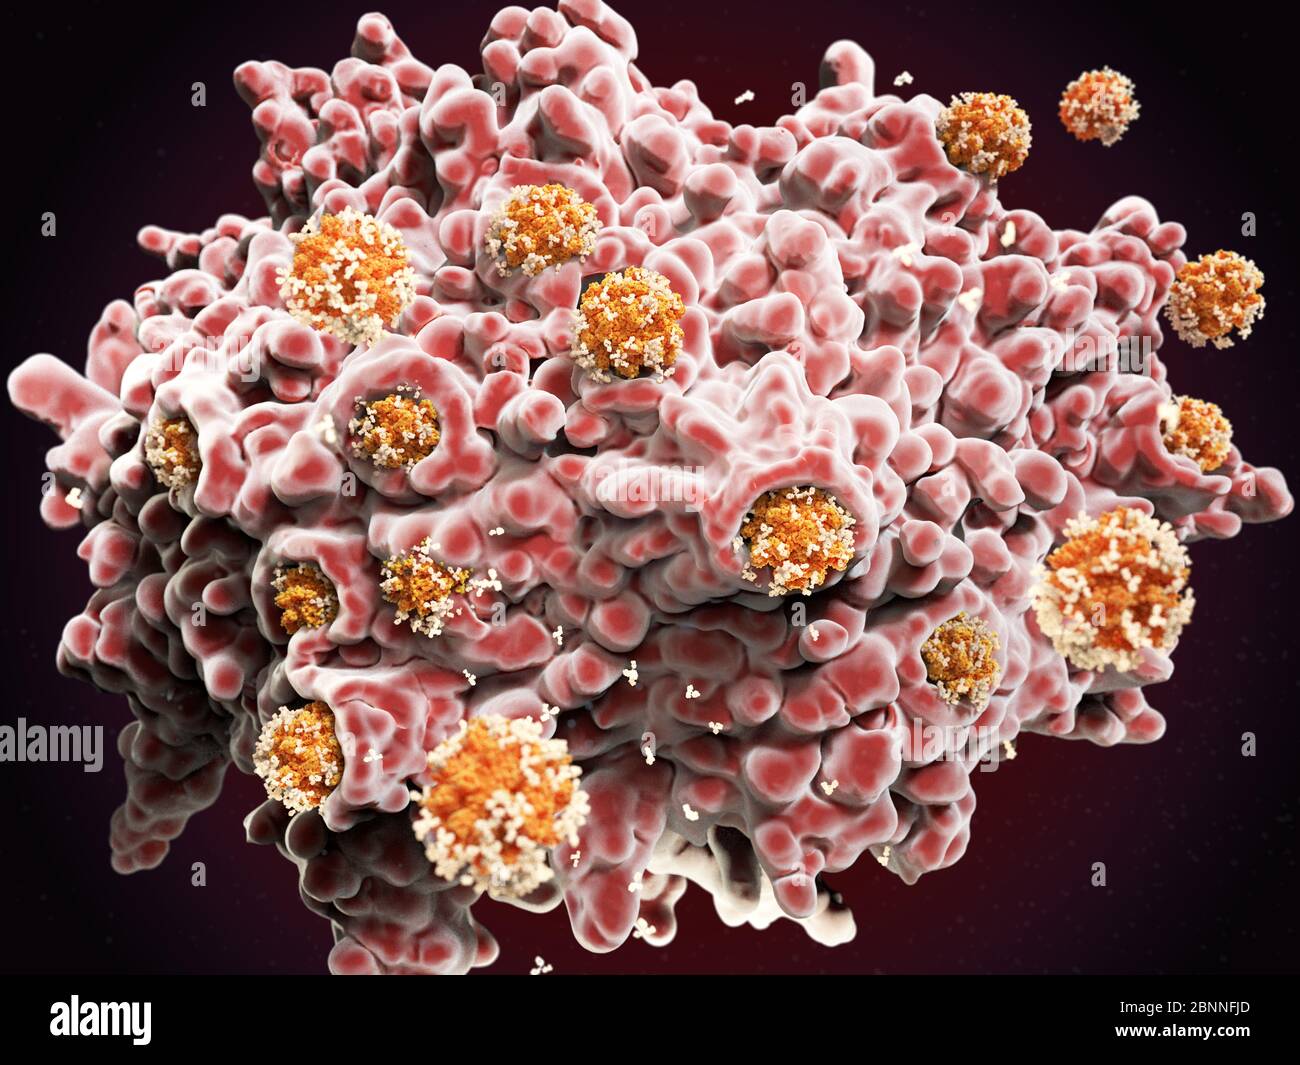 Abbildung einer Makrophagen-weißen Blutkörperchen (rosa), die Coronavirus-Partikel (orange) verschlingen. Dieser Prozess wird Phagozytose genannt. Makrophagen sind Zellen des körpereigenen Immunsystems. Sie nehmen Phagozytose (engulf) auf und zerstören Krankheitserreger, abgestorbene Zellen und Zellreste. Die Coronavirus-Partikel wurden mit Antikörpern (weiß) markiert, um den Makrophagen zu signalisieren, sie zu zerstören. Stockfoto